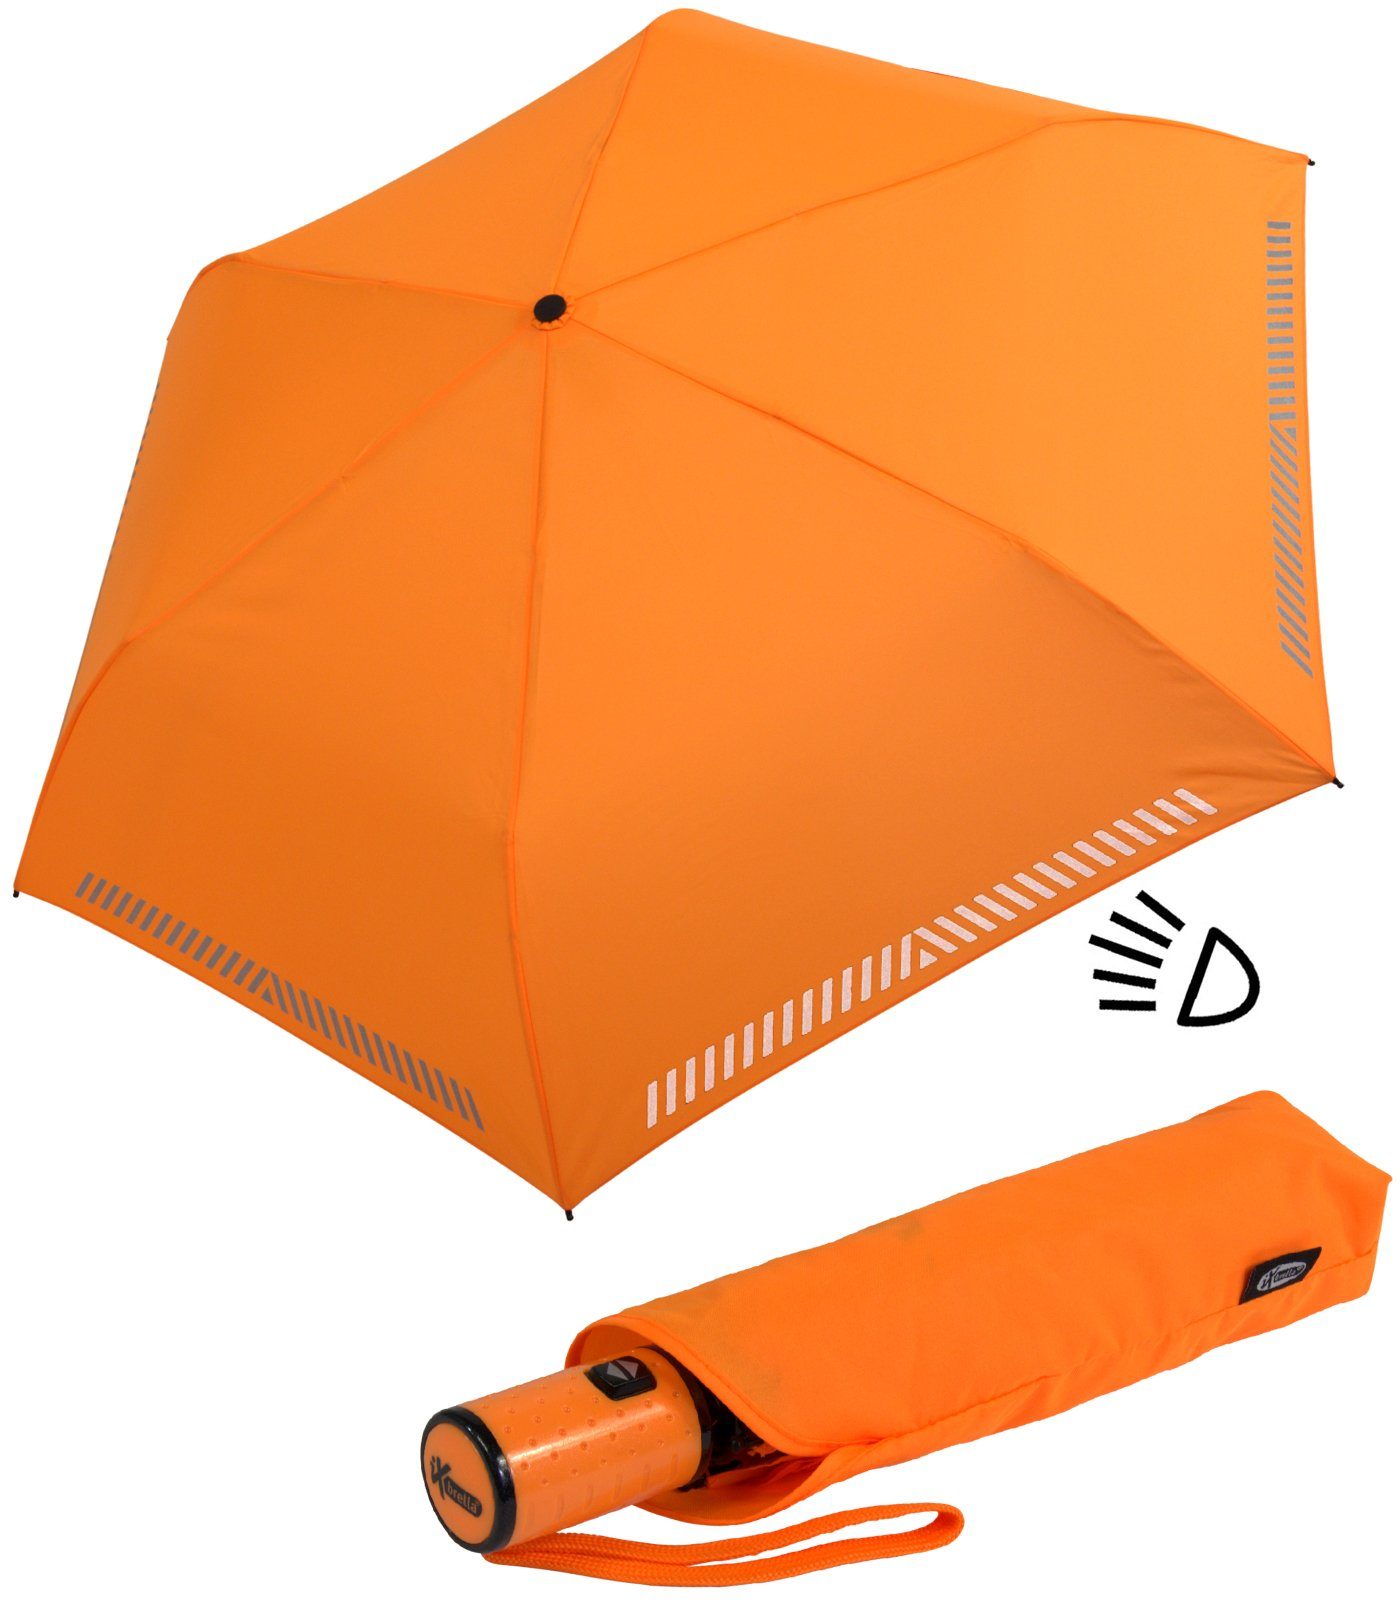 iX-brella Taschenregenschirm Kinderschirm mit Auf-Zu-Automatik, reflektierend, Sicherheit durch Reflex-Streifen - neon orange | Taschenschirme